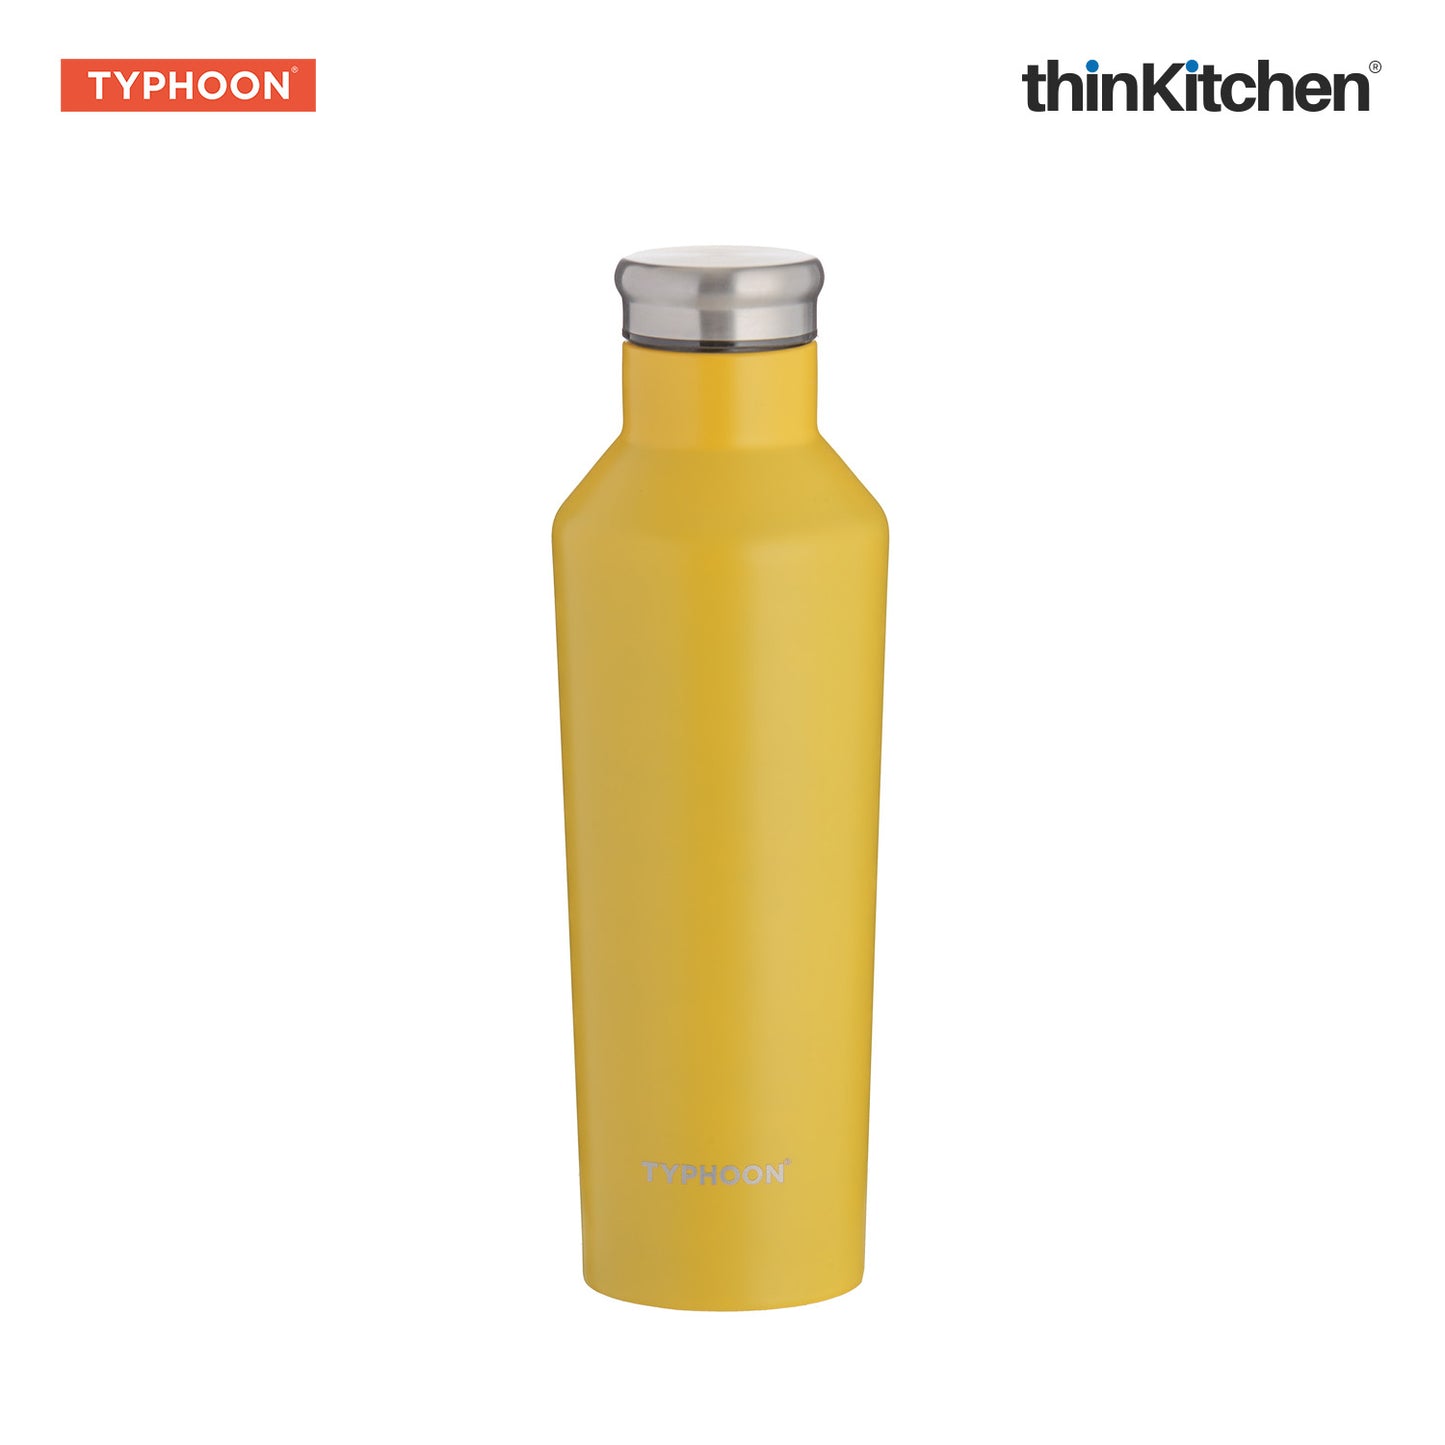 Typhoon Pure Single Wall Bottle Yellow 800ml